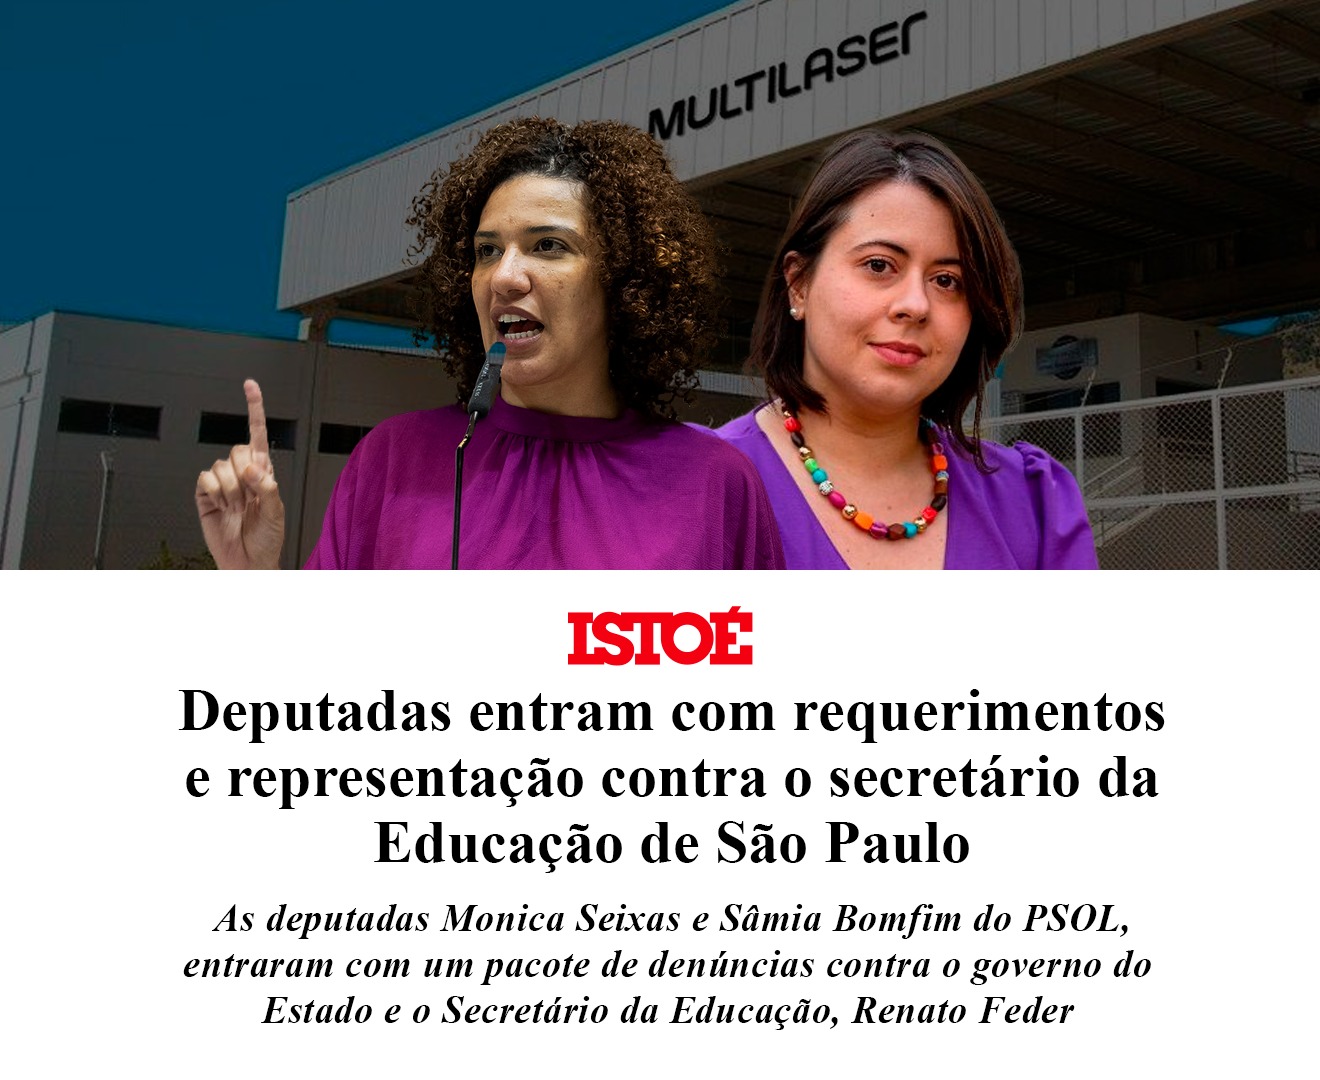 Monica Seixas e Sâmia Bomfim entram com um pacote de denúncias contra Secretário da Educação